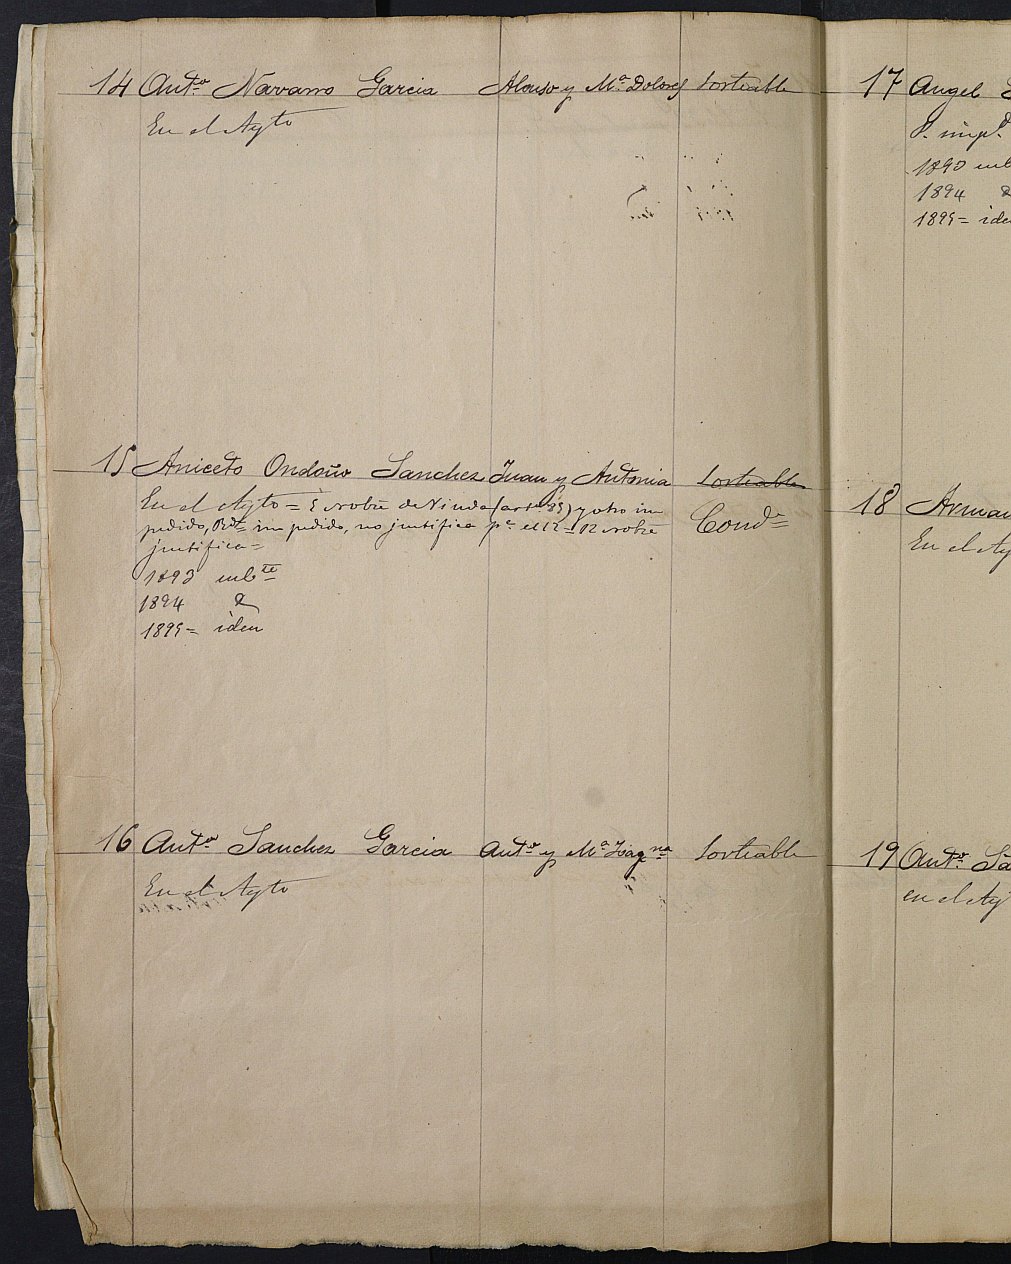 Relación de individuos declarados soldados e ingresados en Caja del Ayuntamiento de Moratalla de 1892.